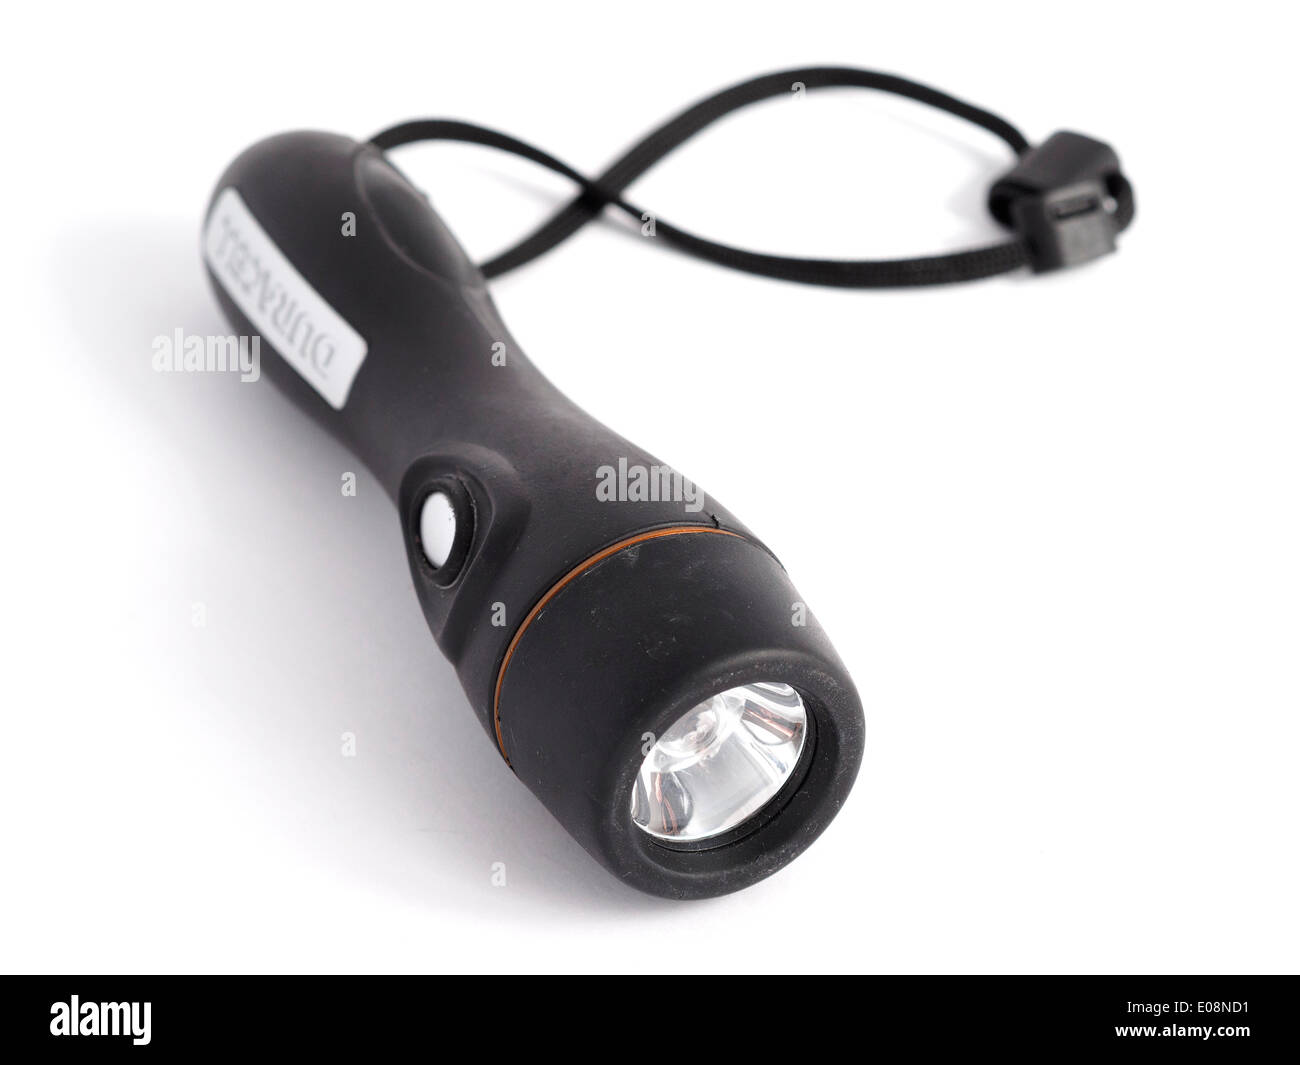 Lampe de poche Duracell noir avec dragonne isolé sur fond blanc Photo Stock  - Alamy